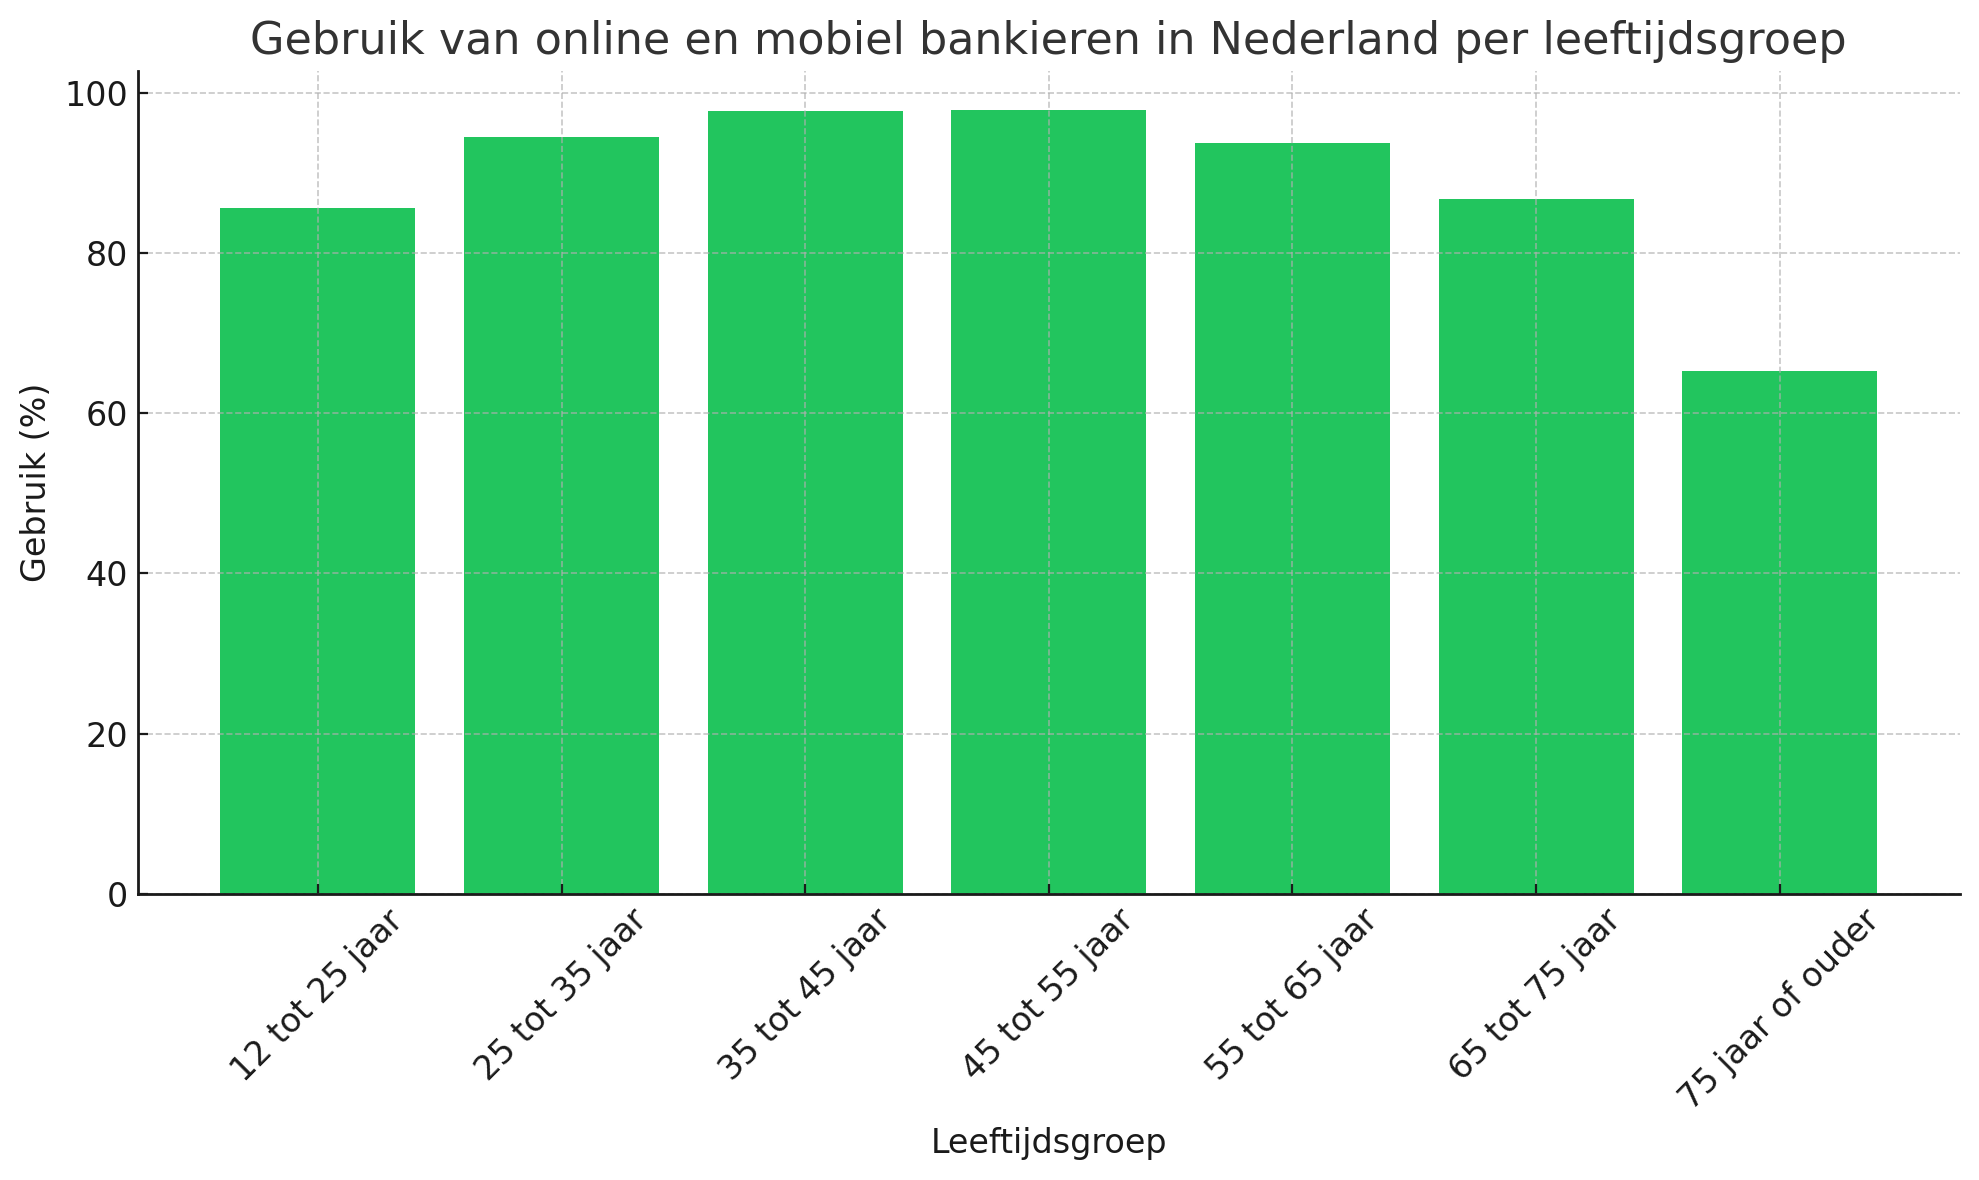 Gebruik van online en mobiel bankieren in Nederland per leeftijdsgroep